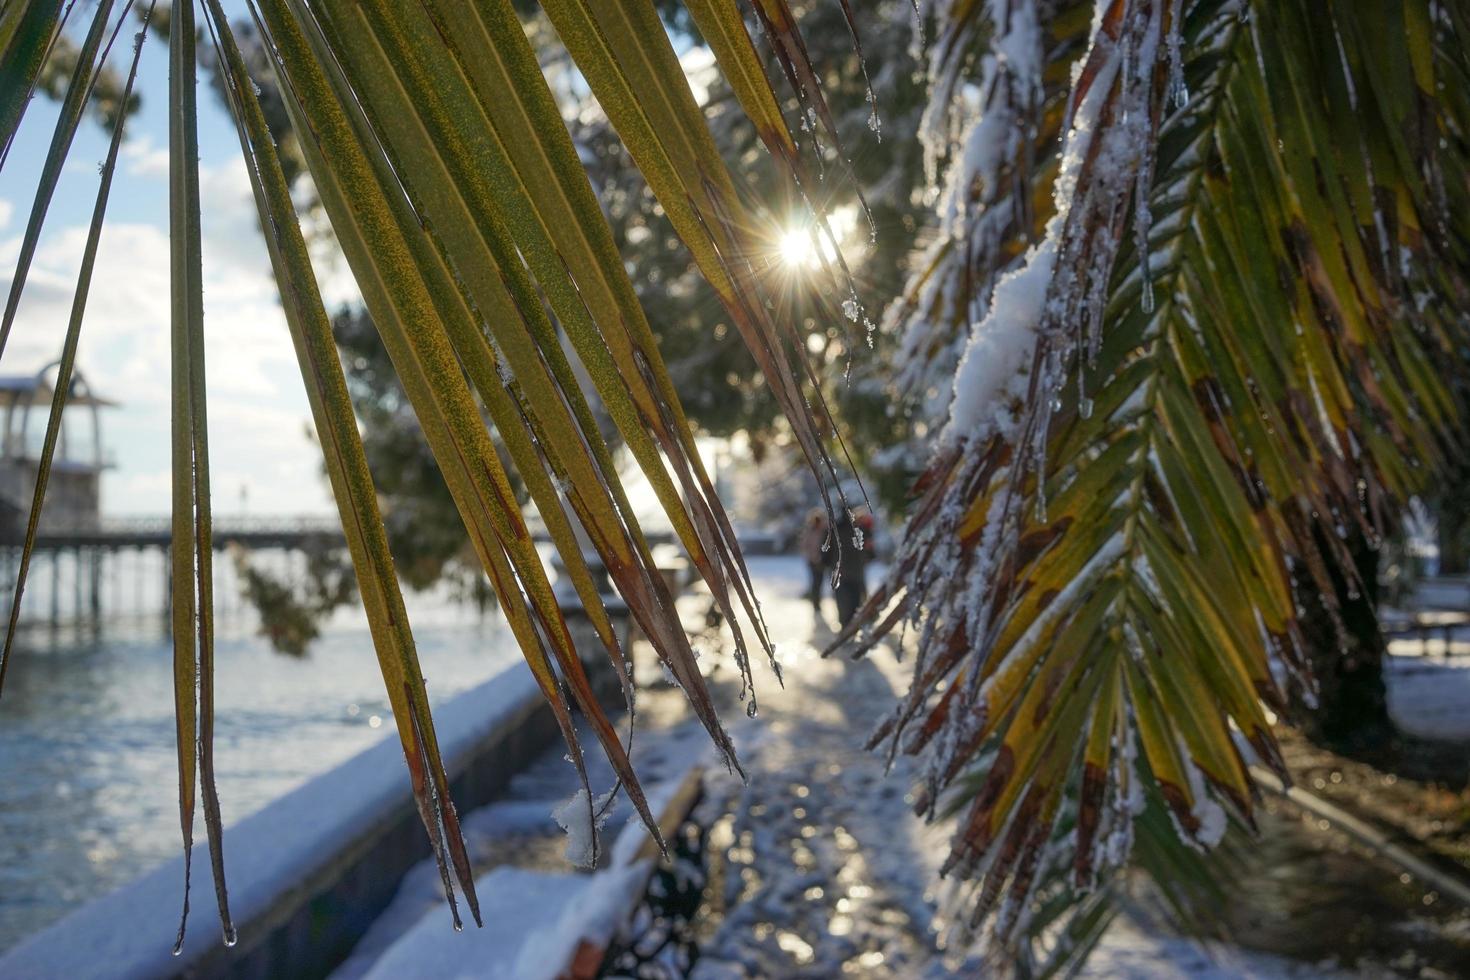 le foglie della palma a ventaglio washingtonia con gocce d'acqua foto